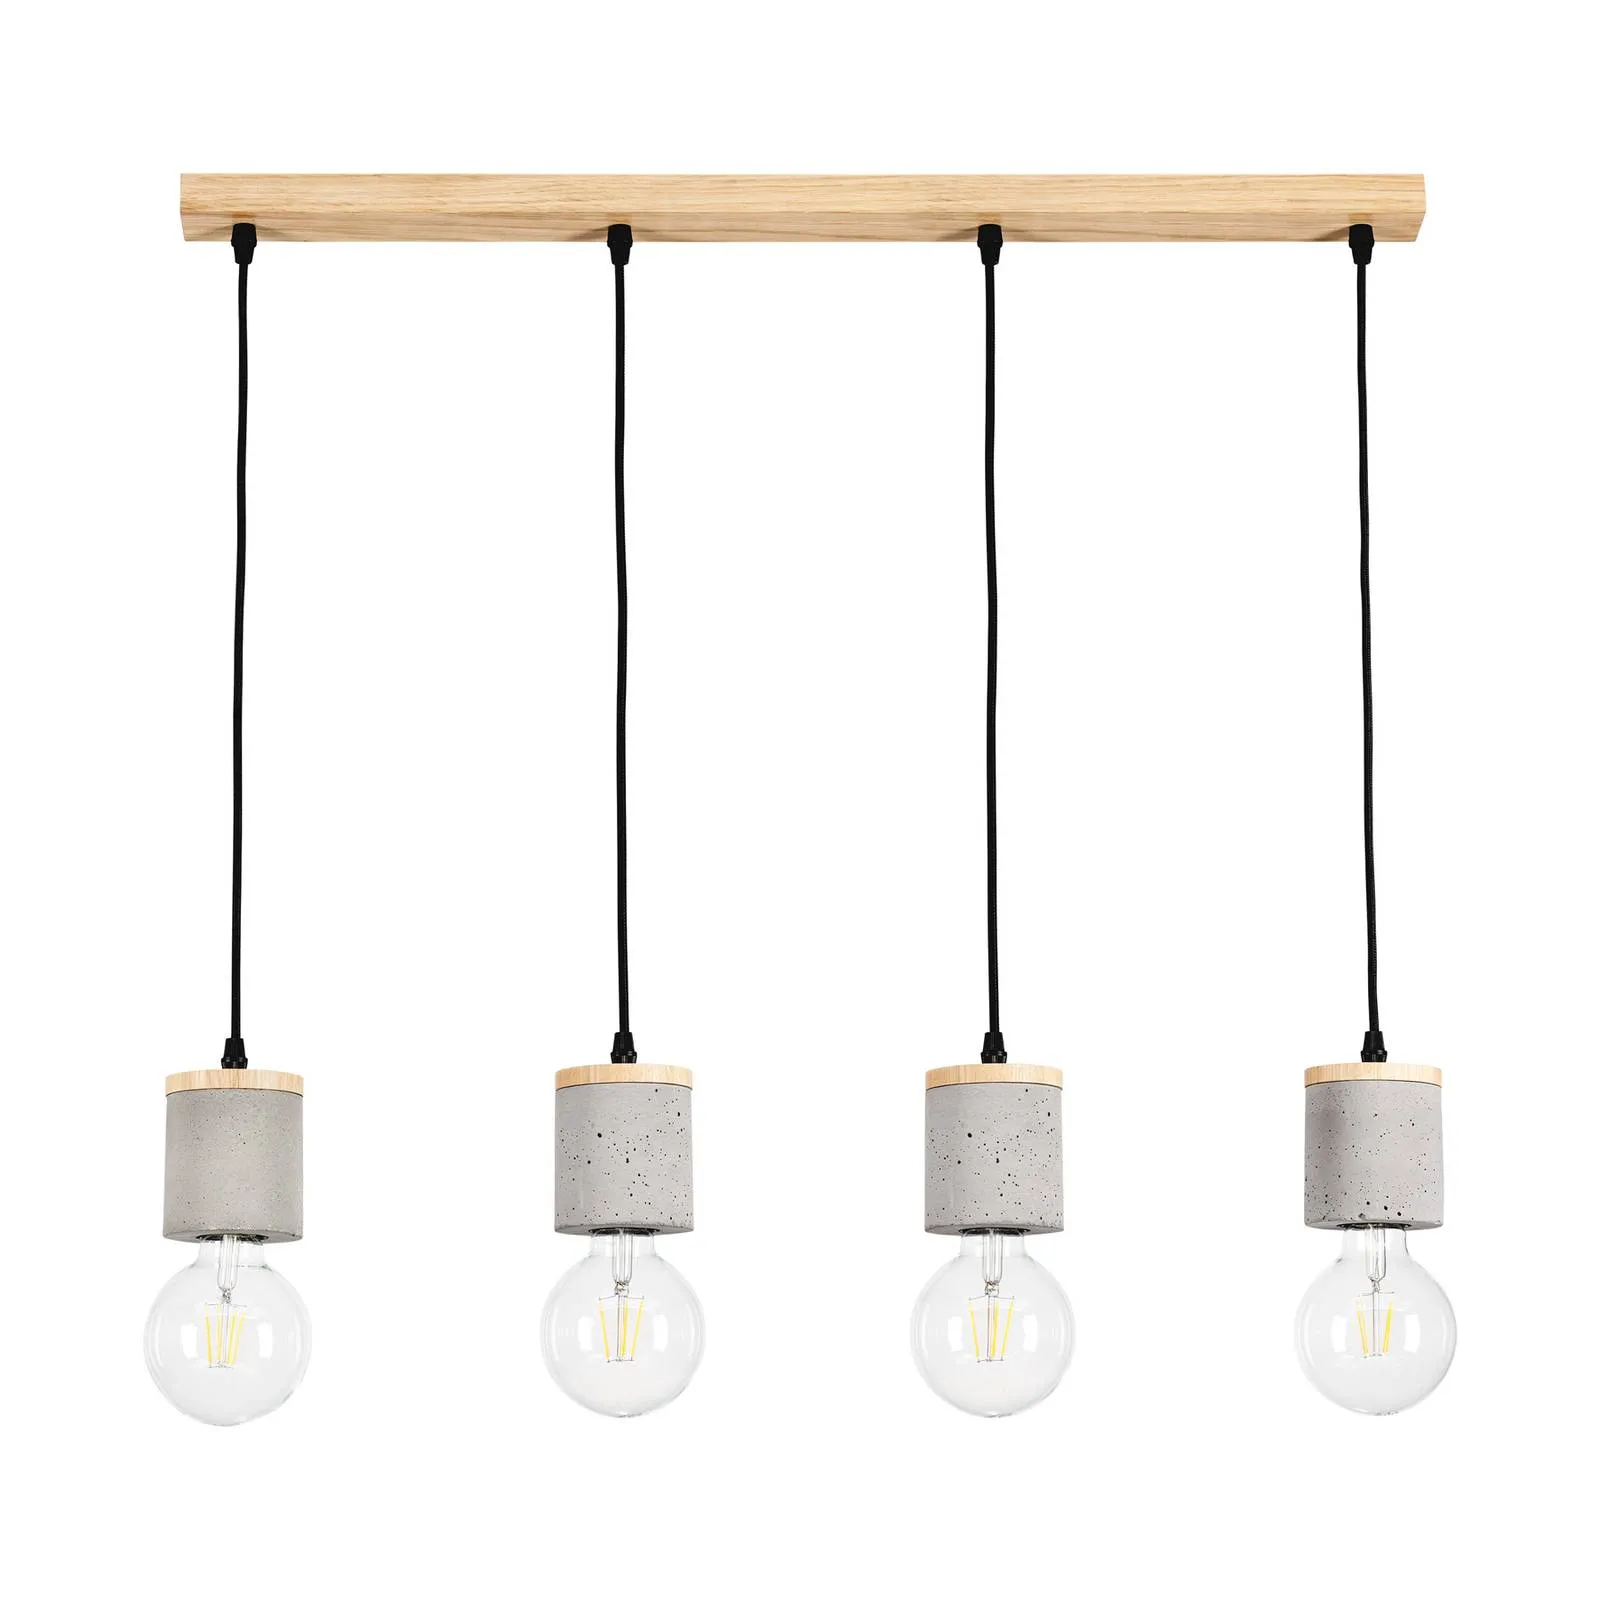 Envolight Jasper hanging light, 4-bulb, linear